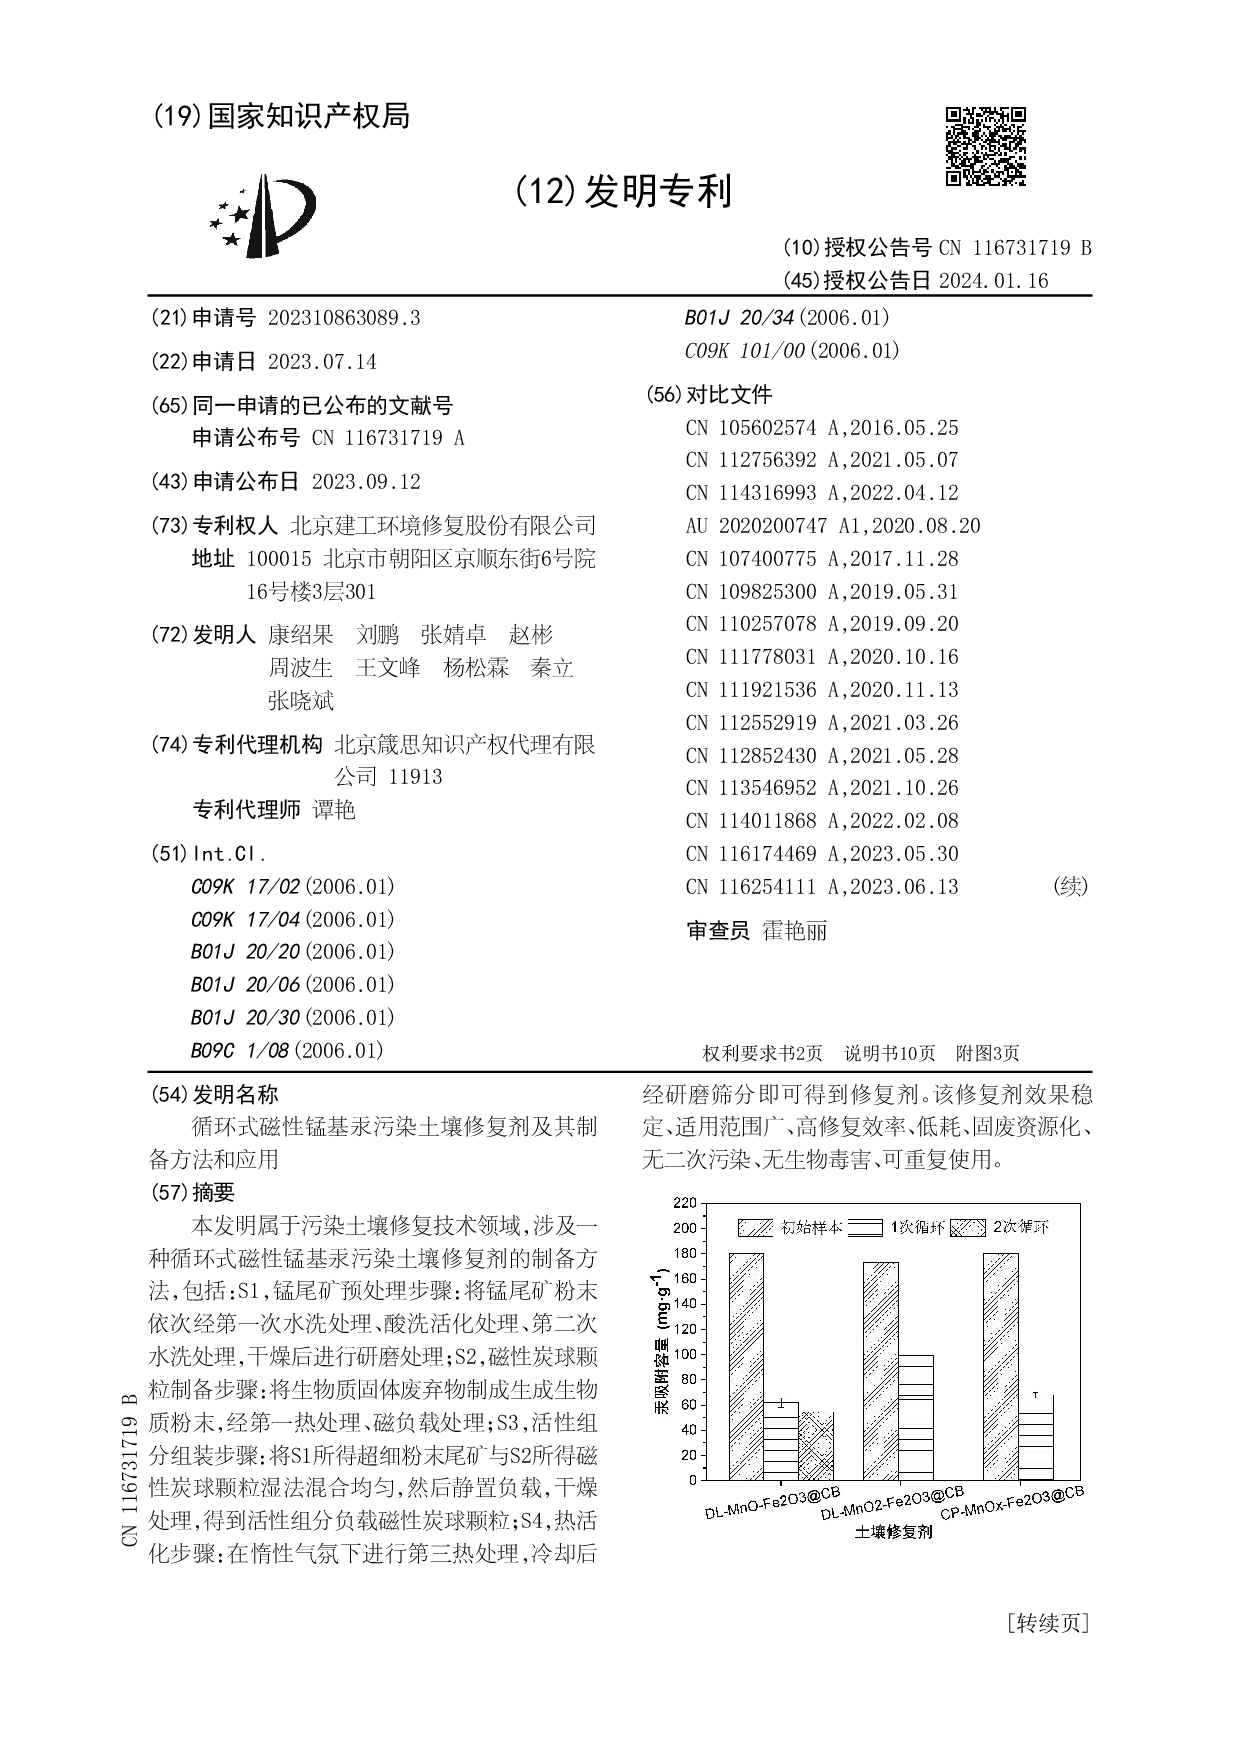 北京建工环境修复公司获授权“循环式磁性锰基汞污染土壤修复剂”发明专利